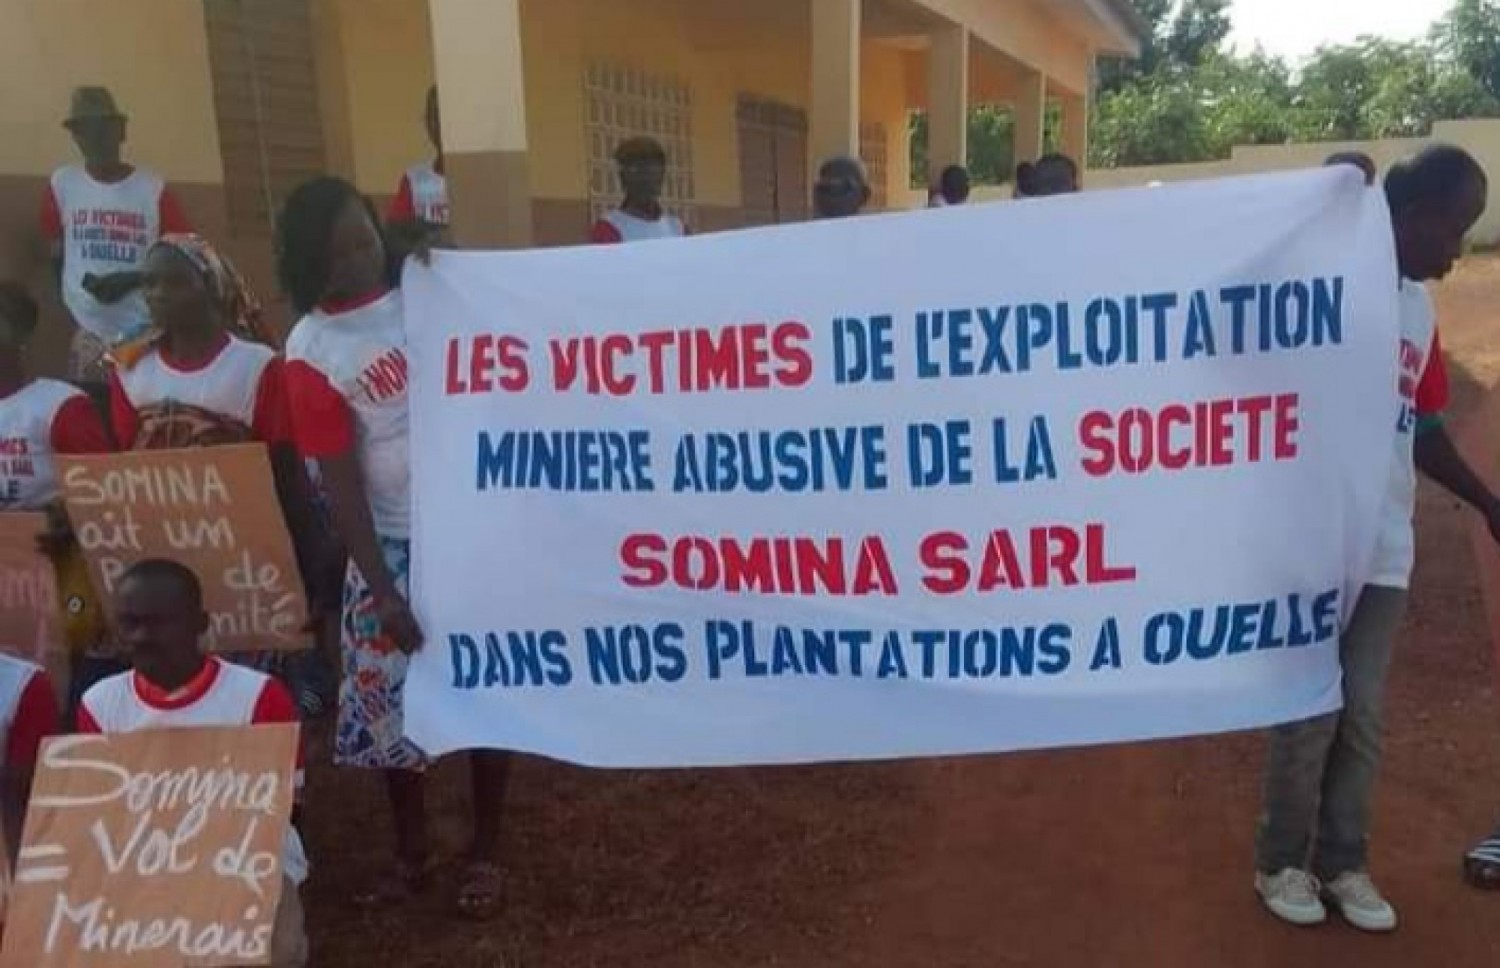 Côte d'Ivoire : Ouéllé, leurs plantations et cimetières détruits par une société minière, des populations font une marche sur la préfecture